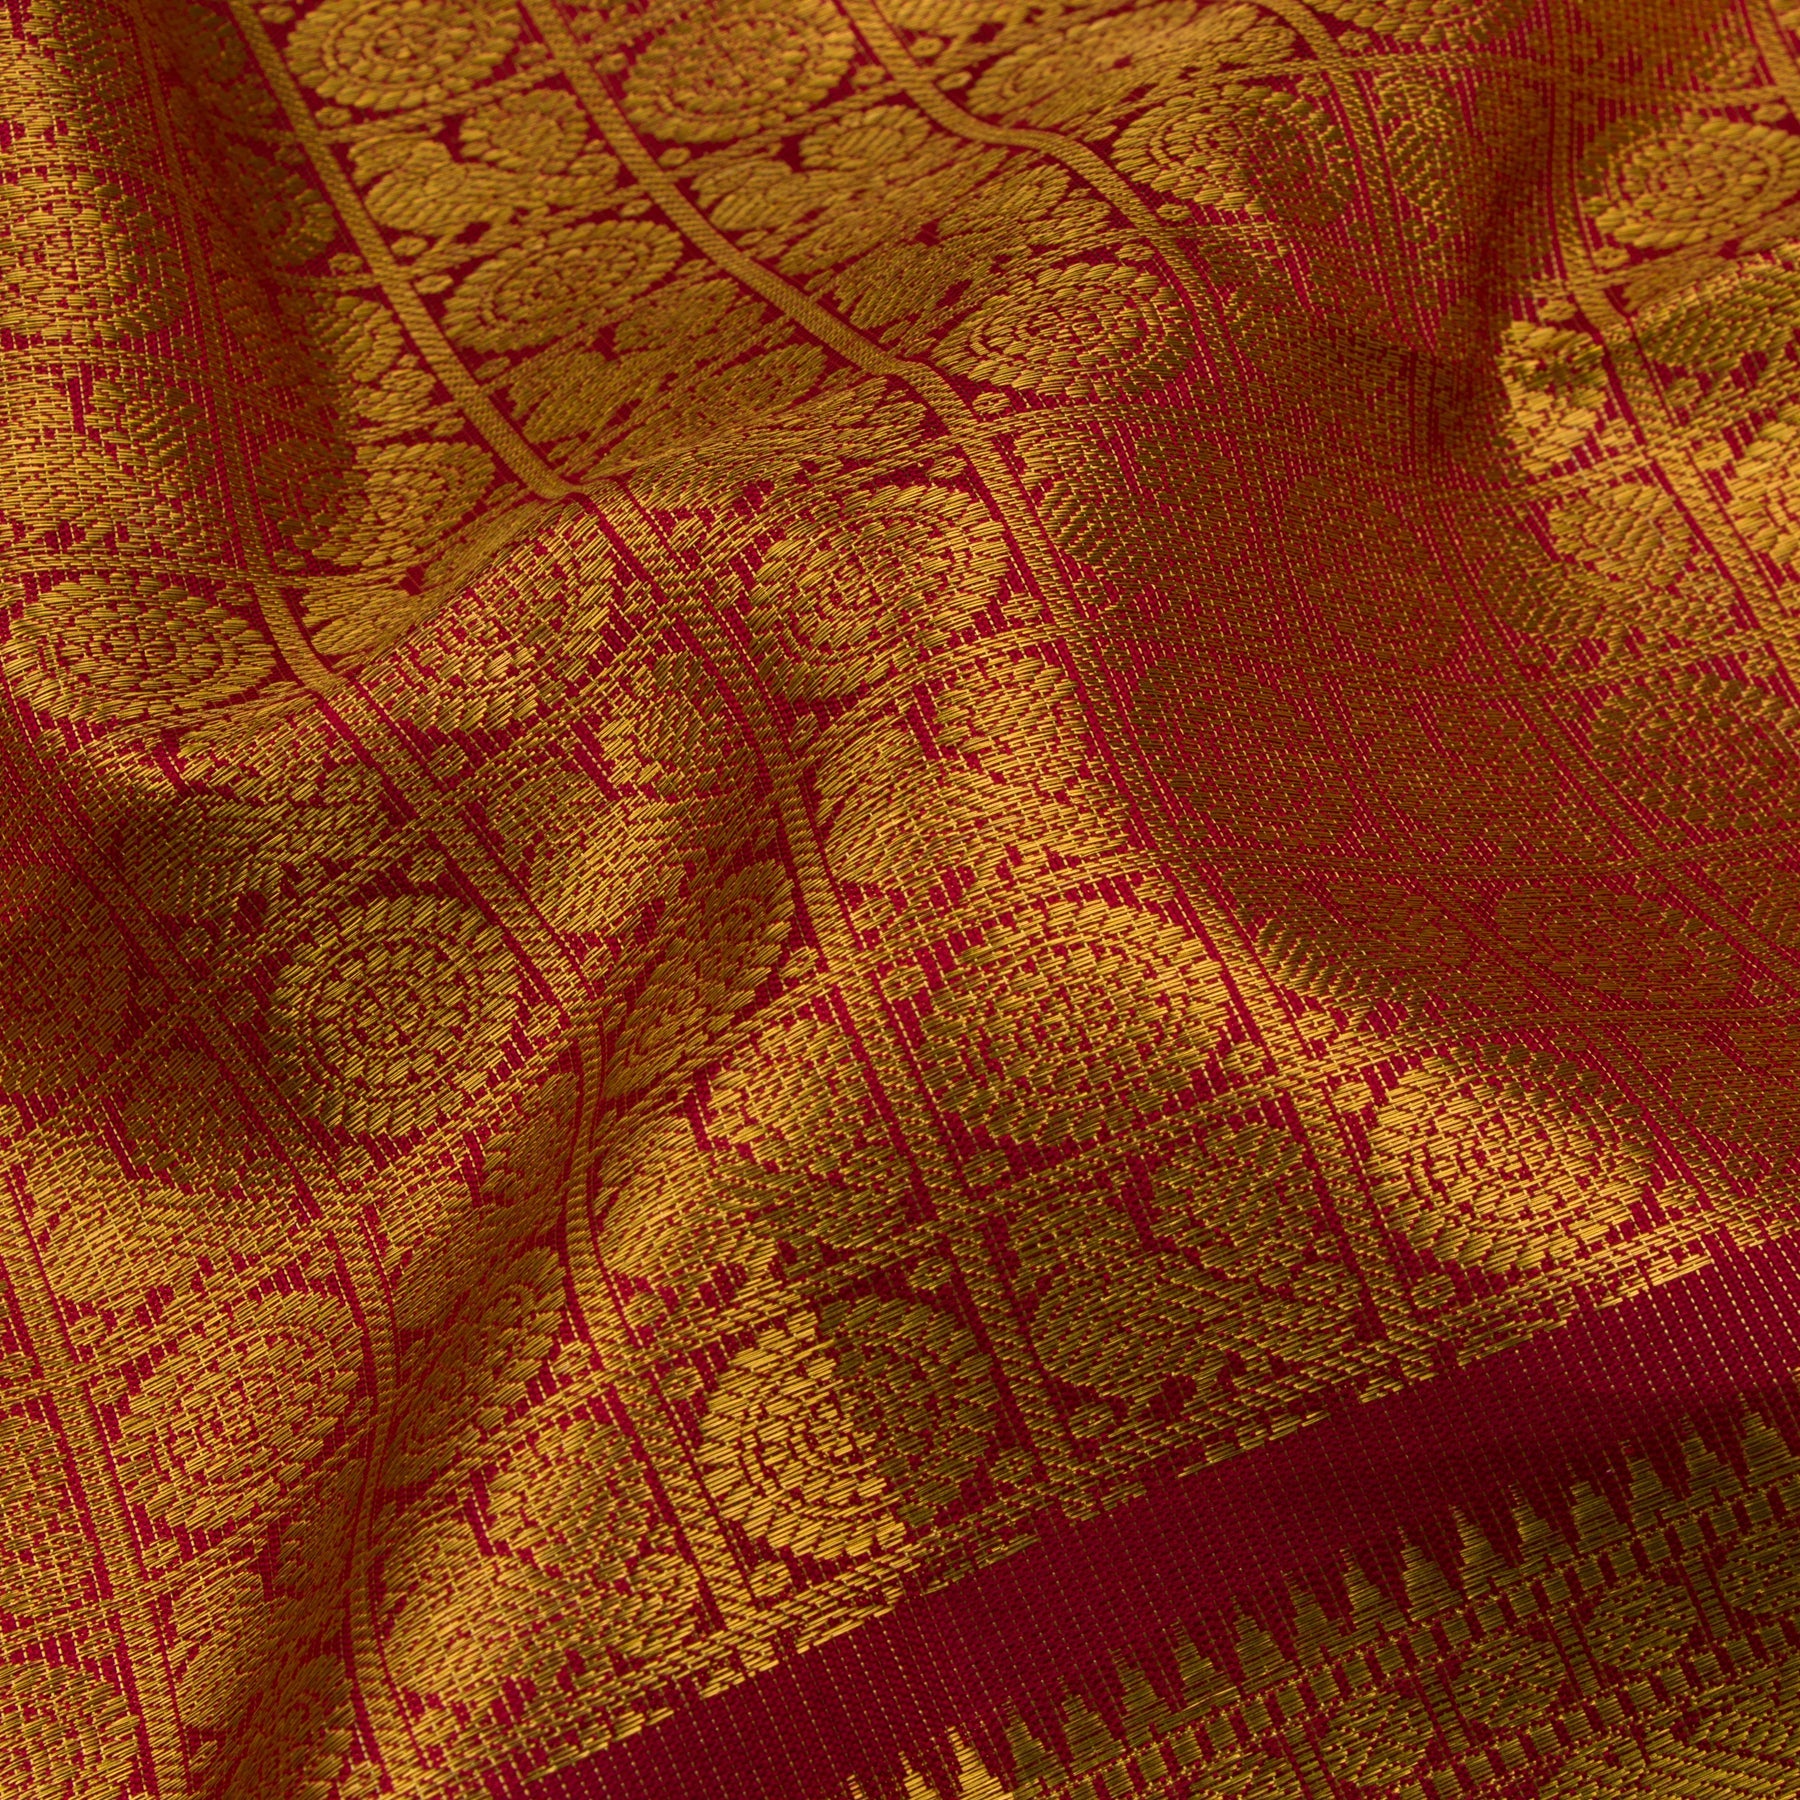 Kanakavalli Kanjivaram Silk Sari 22-110-HS001-14747 - Fabric View